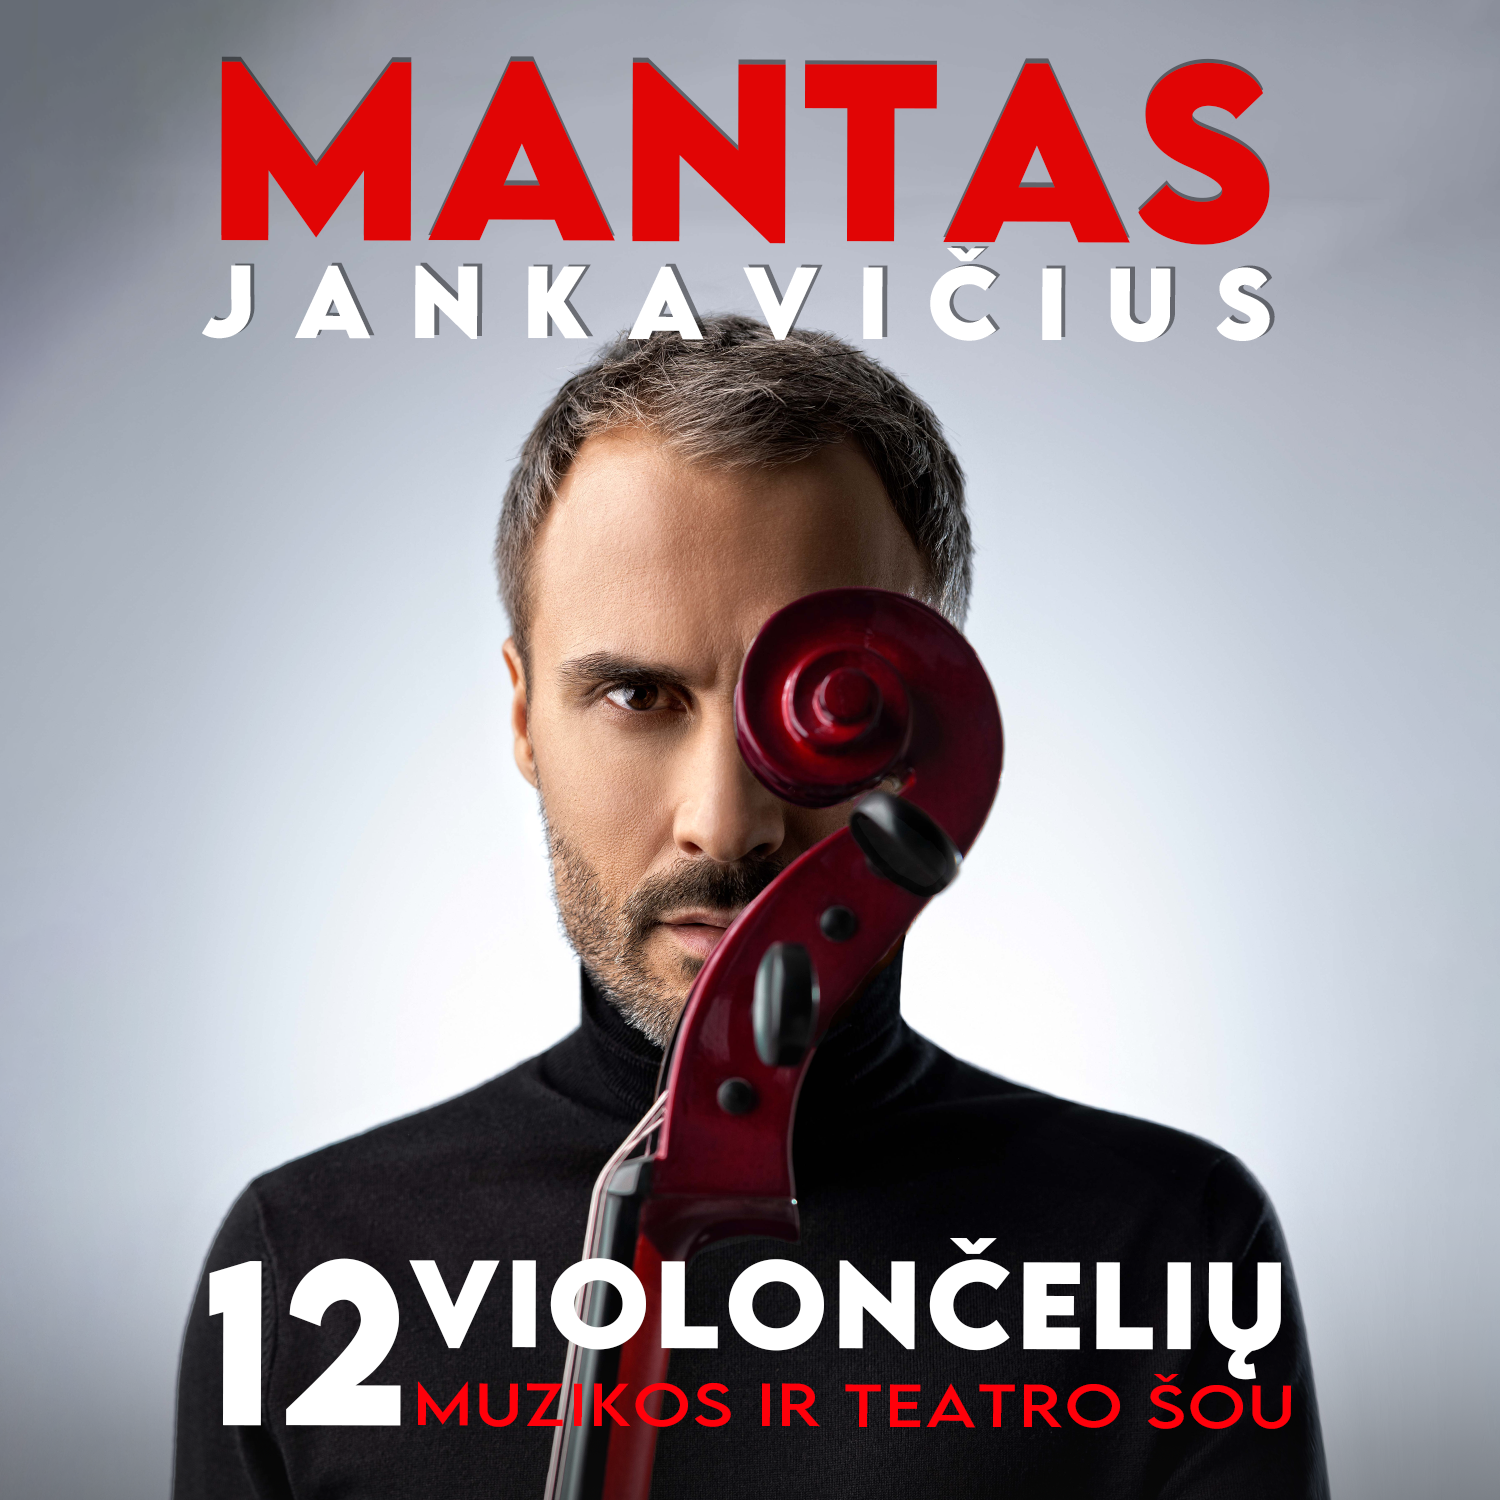 MANTAS JANKAVIČIUS: 12 violončelių